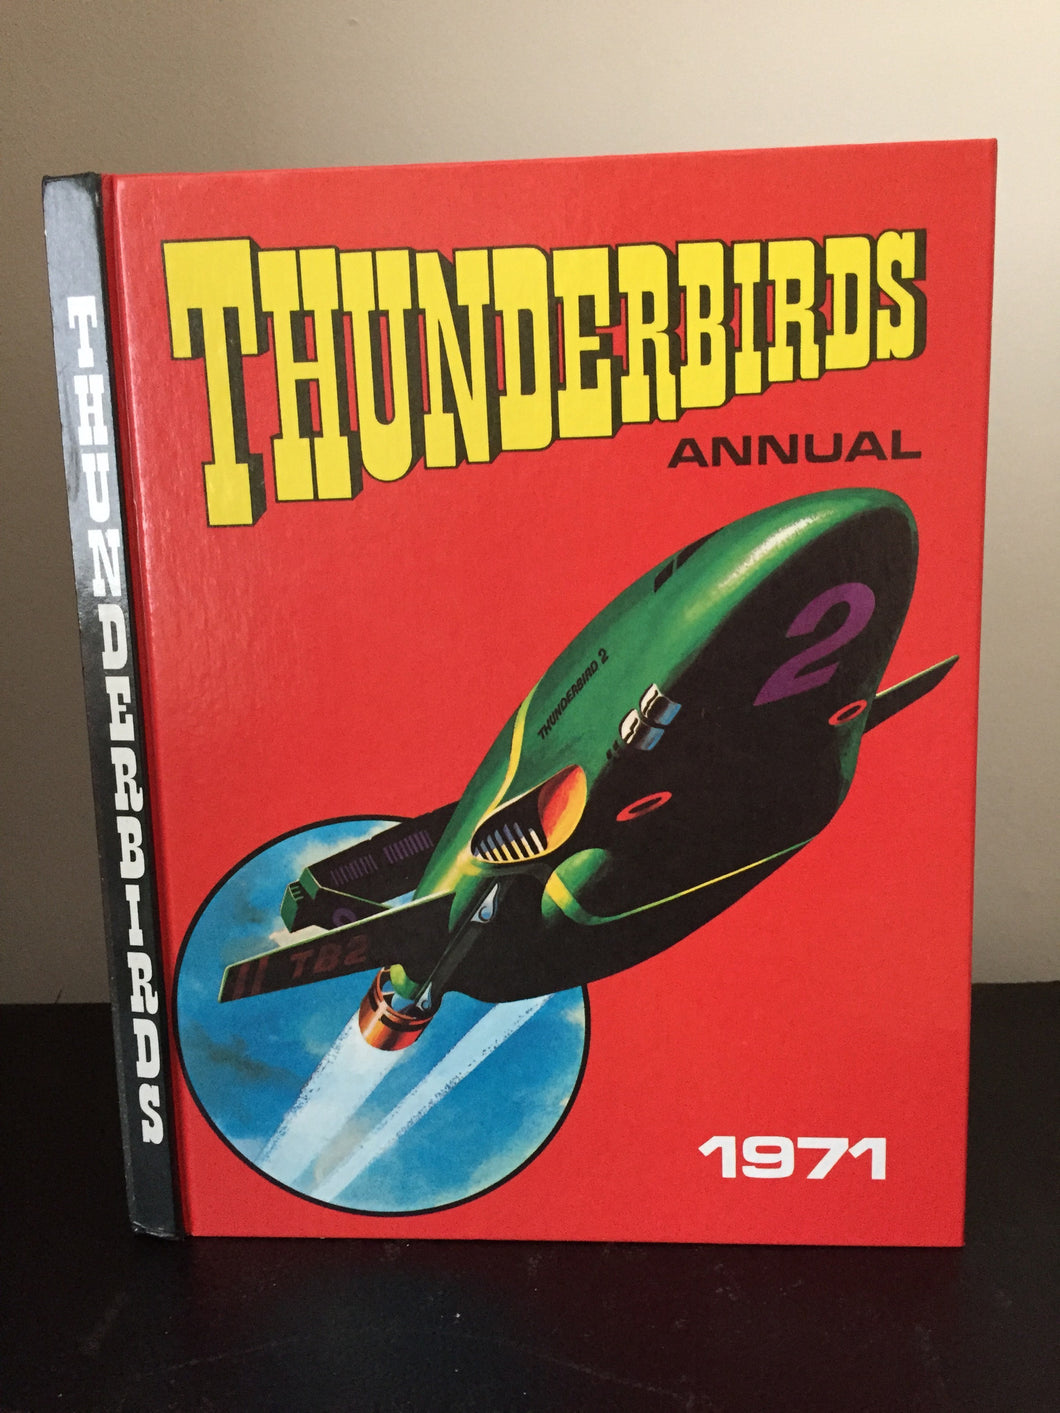 Thunderbirds Annual 1971